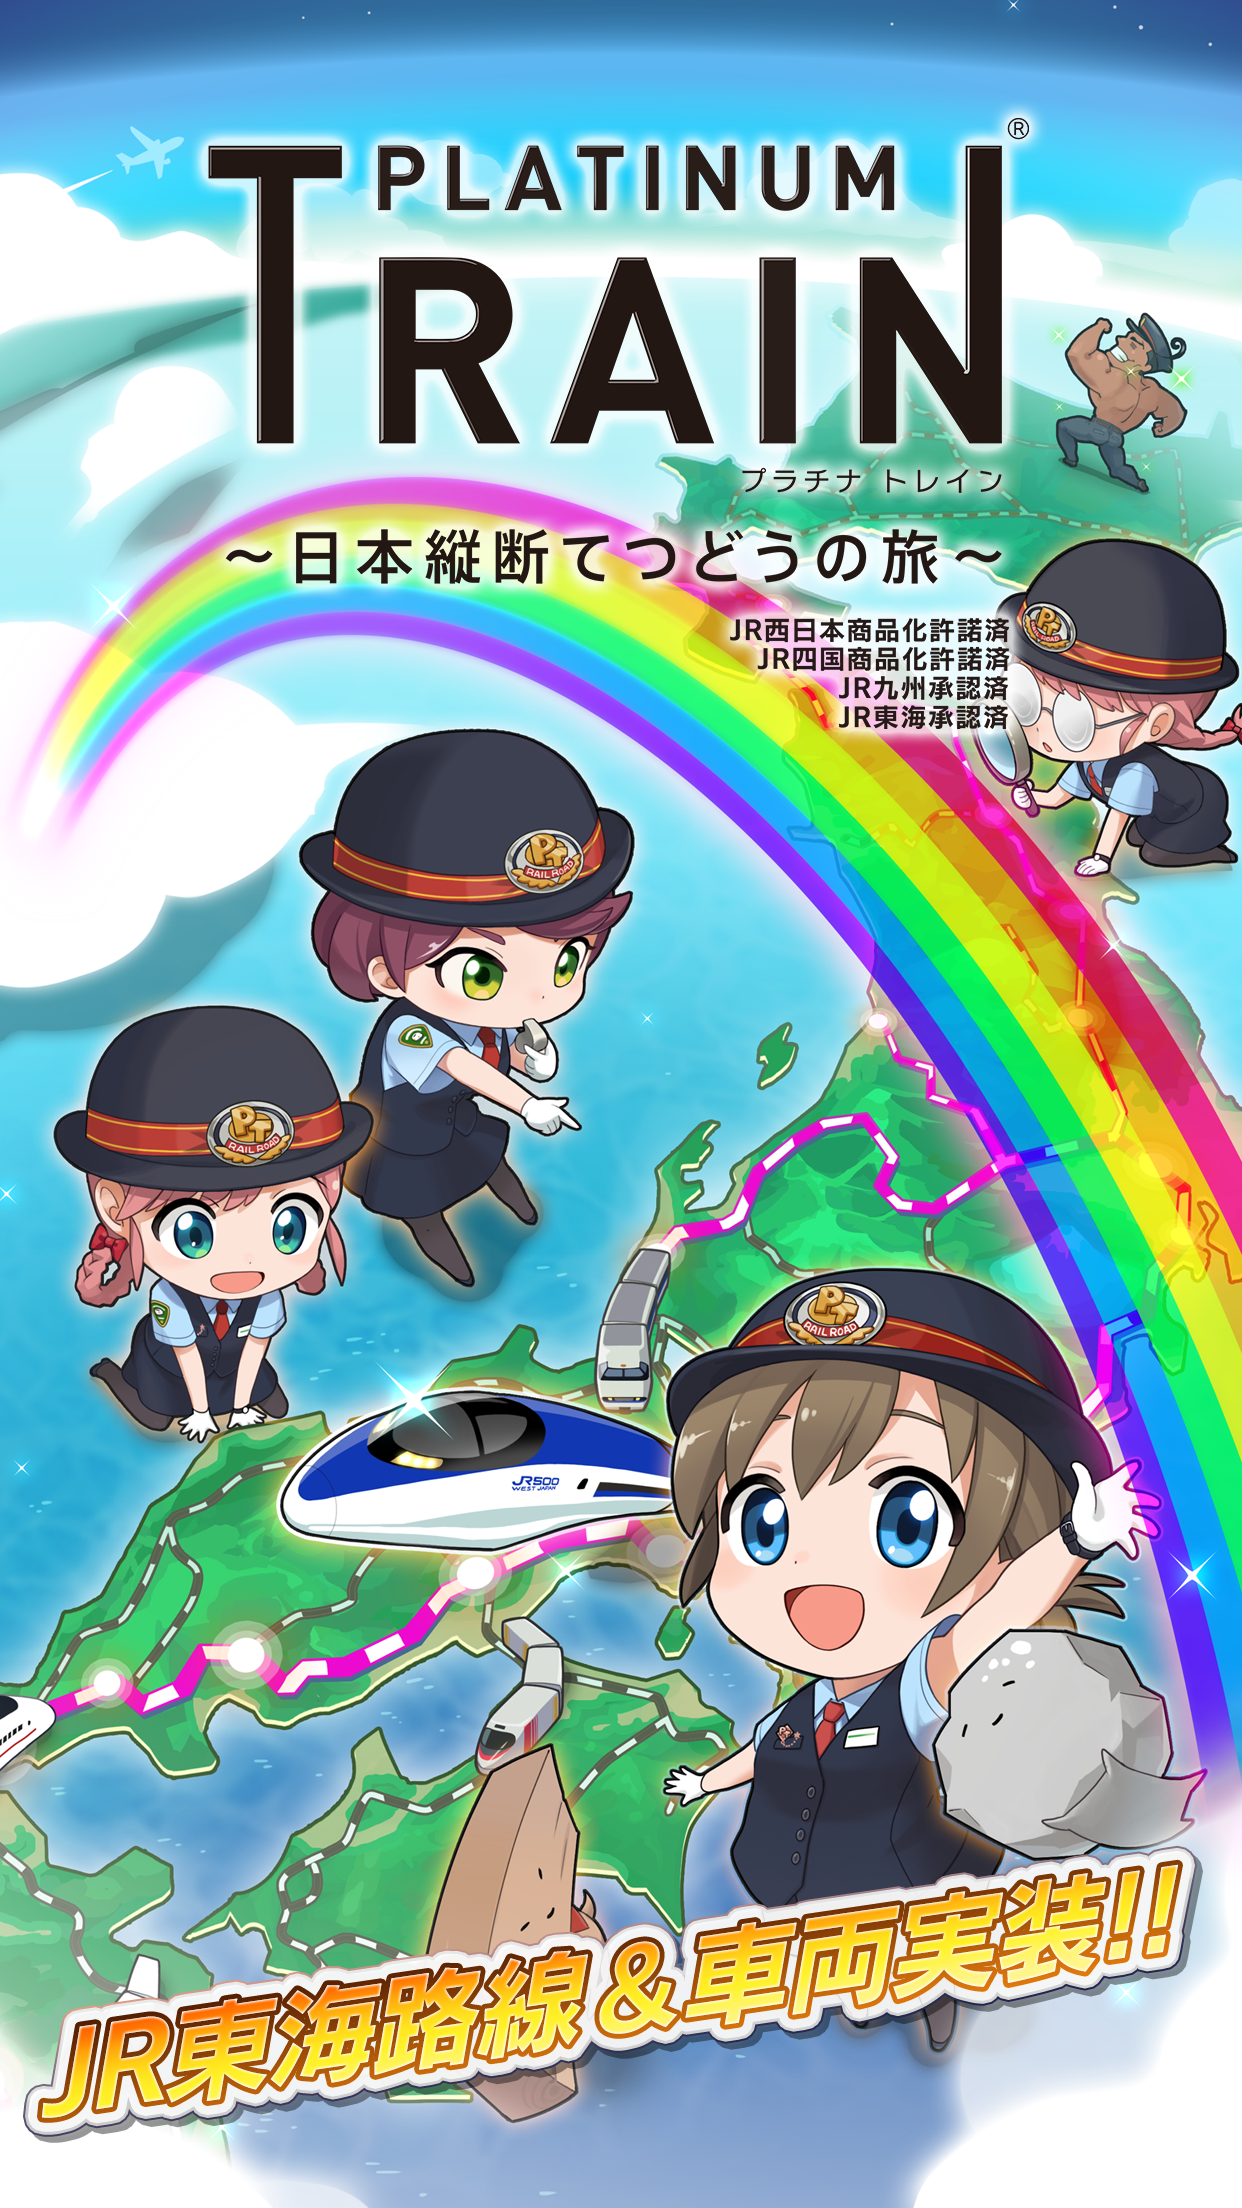 Screenshot 1 of Chuyến tàu Platinum Train xuyên Nhật Bản 7.2.3